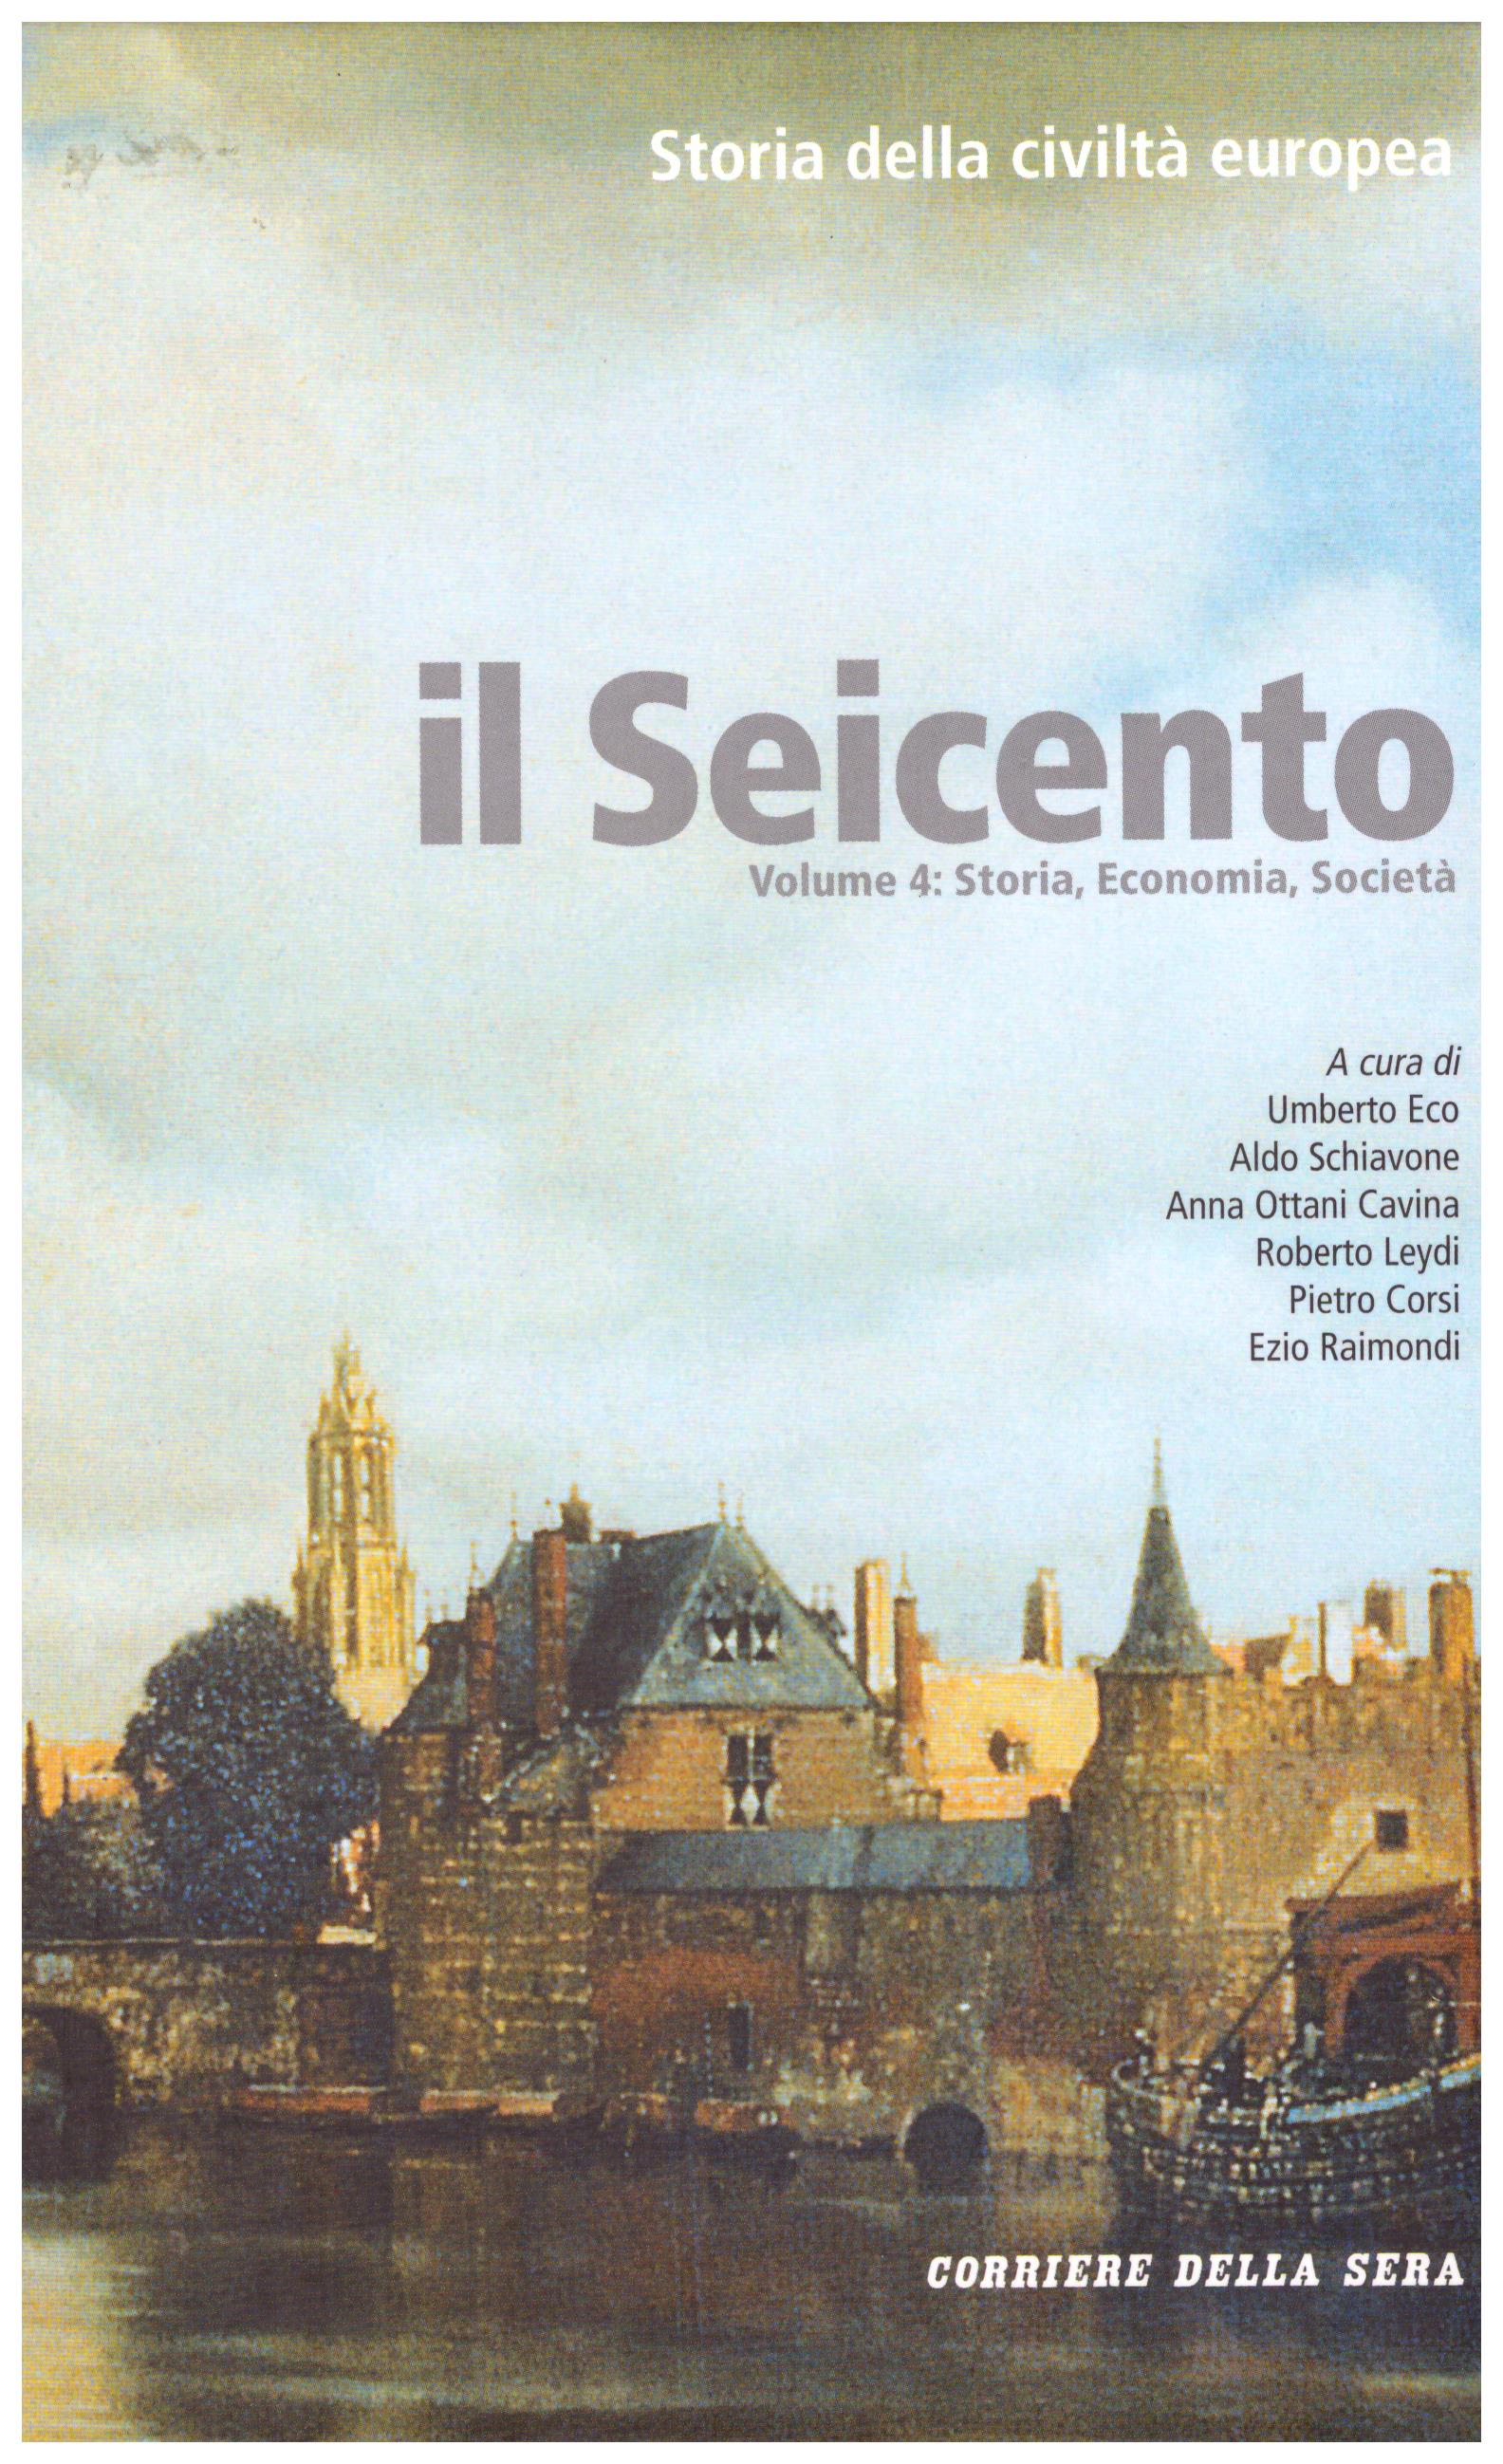 Il Seicento. Storia della civiltà europea. Vol. 4 - 5 - 6. (Corriere della Sera).